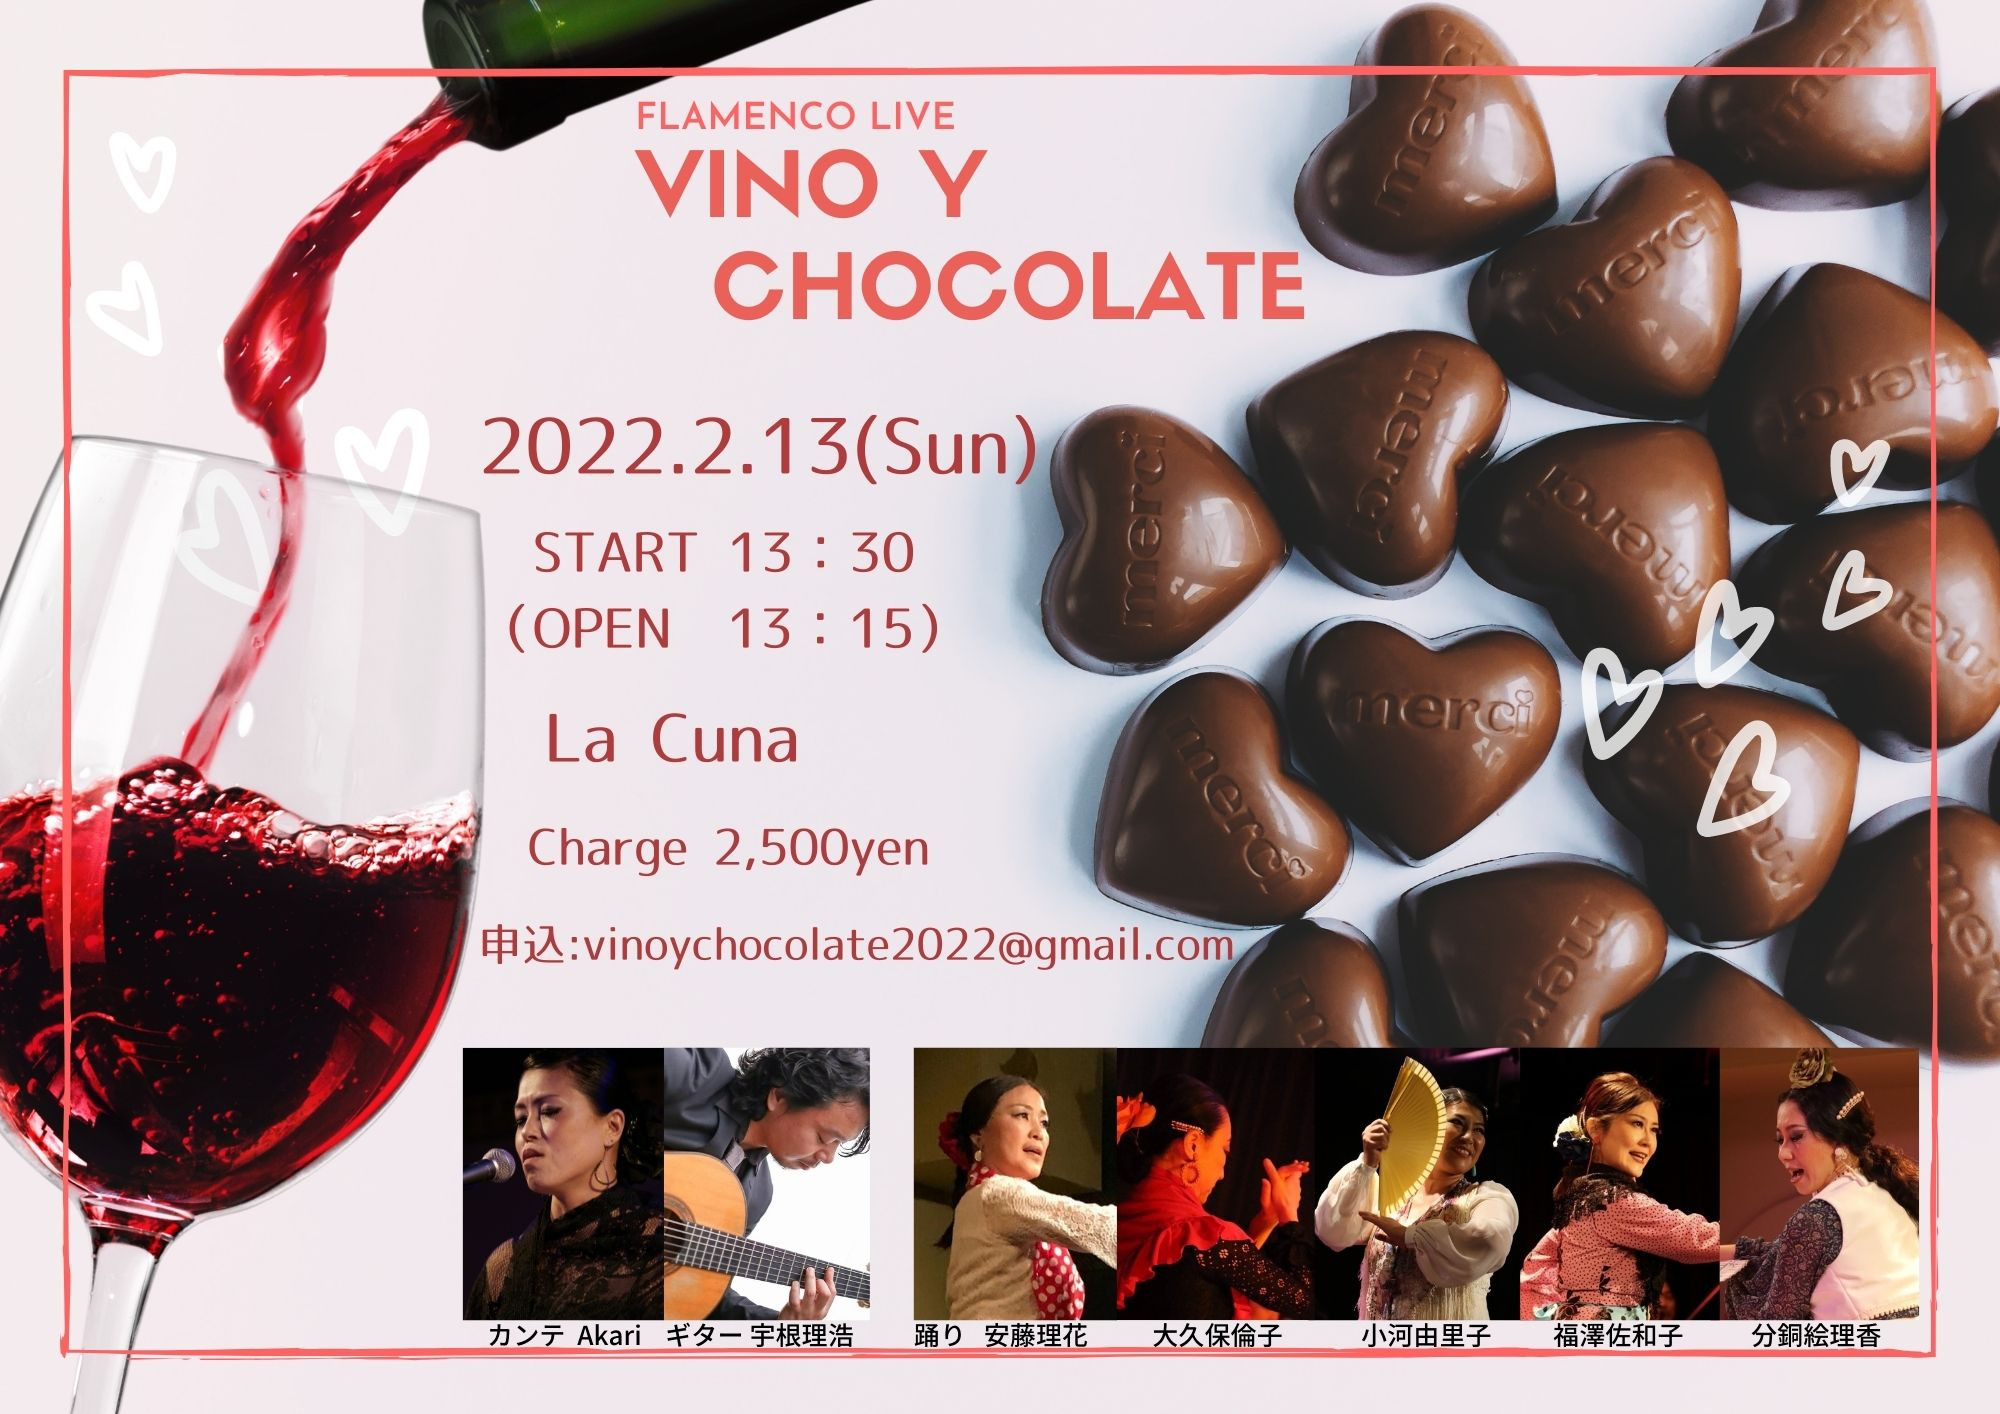 2022年2月13日(日)Flamenco Live 「Vino y Chocolate」（現地観覧）